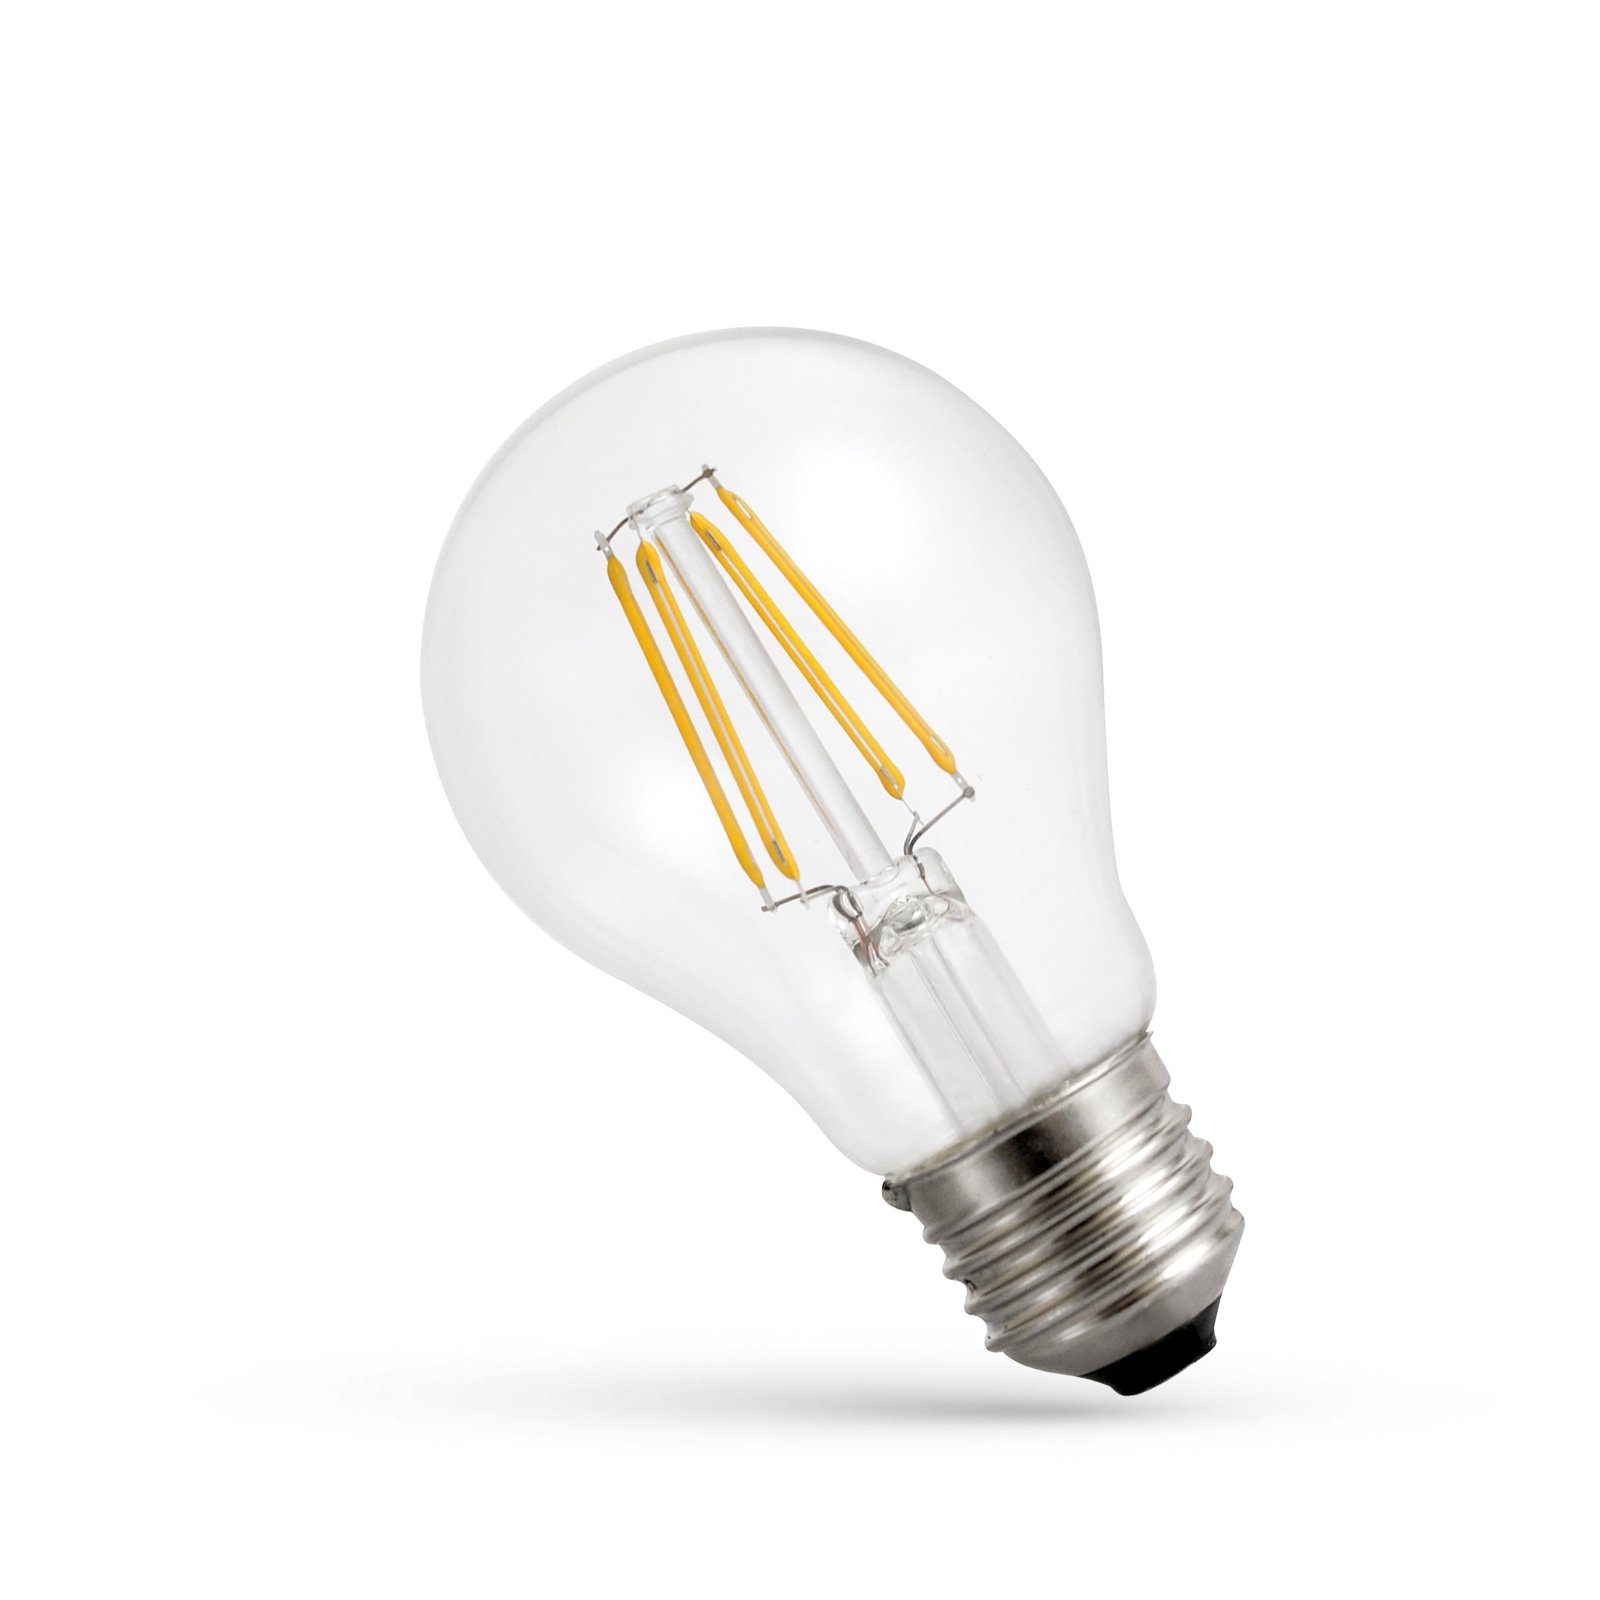 Filament Filament SpectrumLED Warmweiß LED klar LED-Leuchtmittel spectrum E27, Warmweiß, 2700K A60 1100lm DIMMBAR, 300° 8,5W=75W E27 Dimmbar, Klar LED